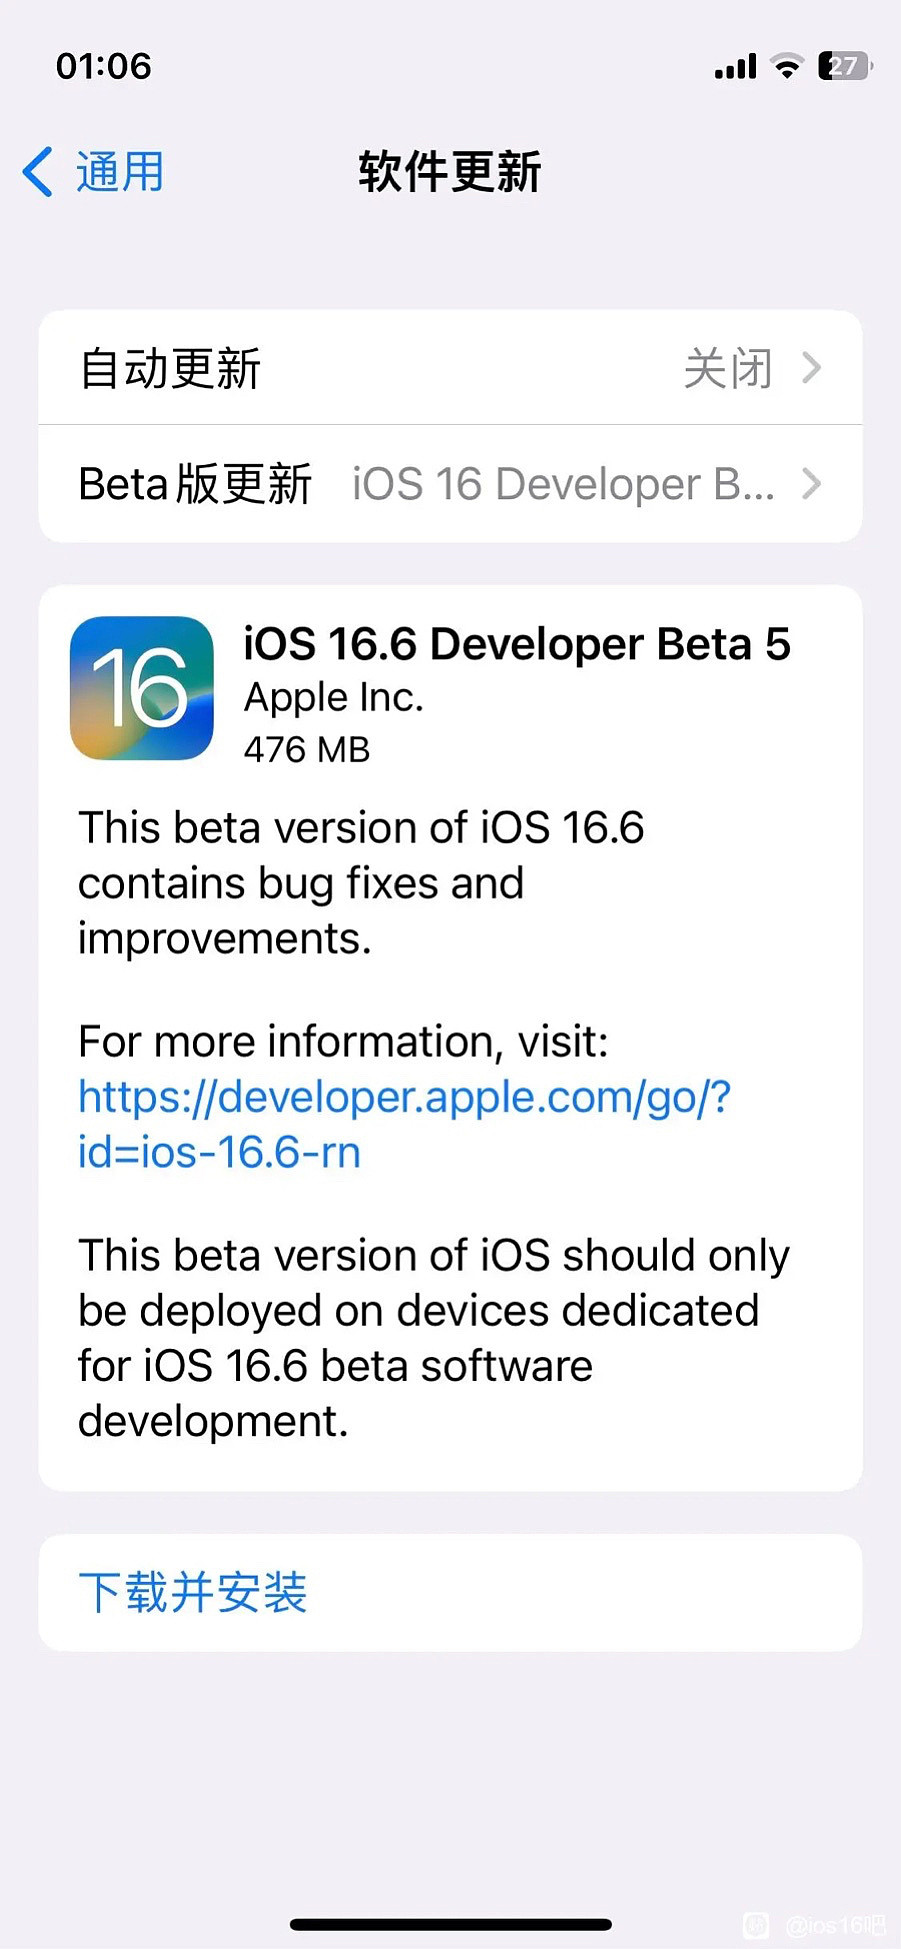 苹果 iOS / iPadOS 16.6 开发者预览版 Beta 5 发布 - 2